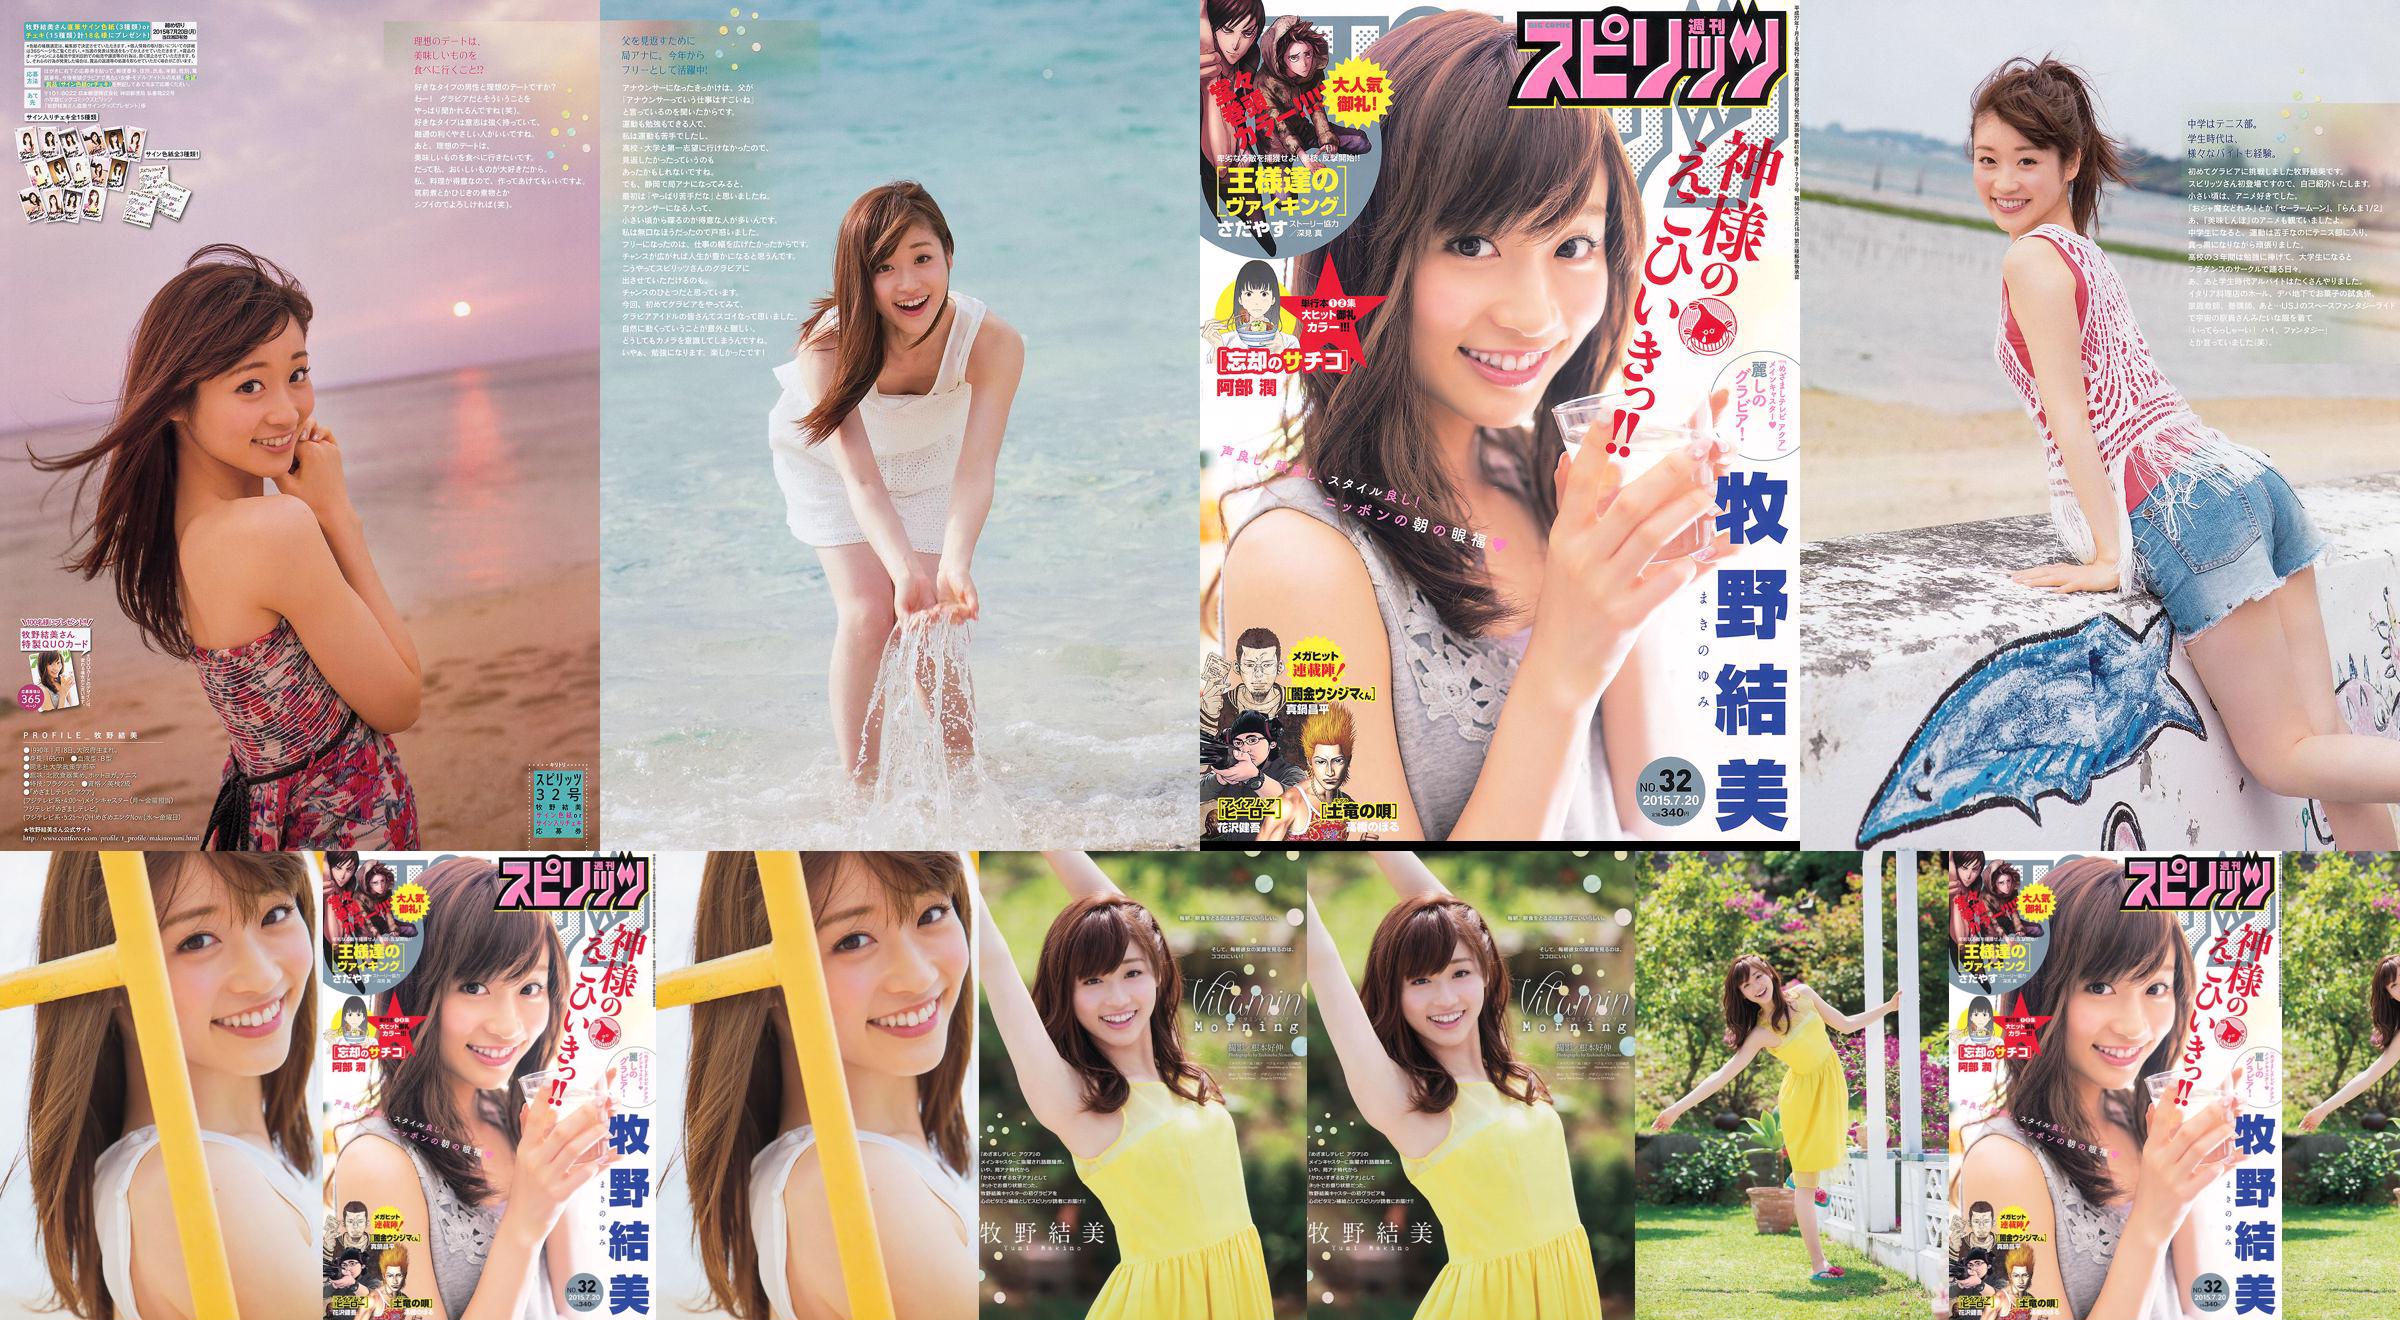 [Weekly Big Comic Spirits] Yumi Makino 2015 No.32 Photo Magazine No.4039bc Página 1